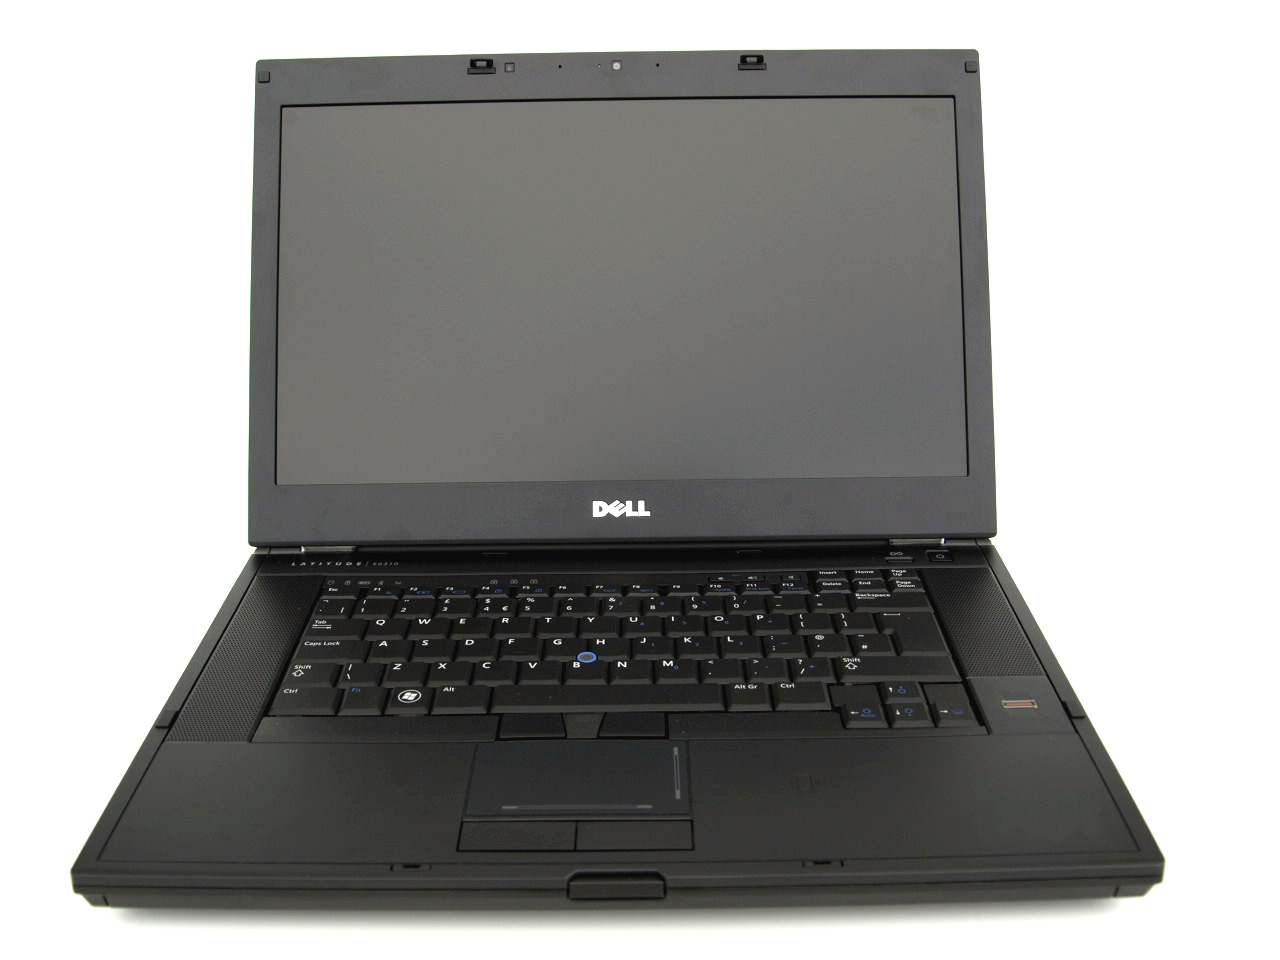 Laptop DELL Latitude E6510, Intel Core i5-560M 2.66GHz, 4GB DDR3, 250GB SATA, DVD-RW, 15.6 Inch